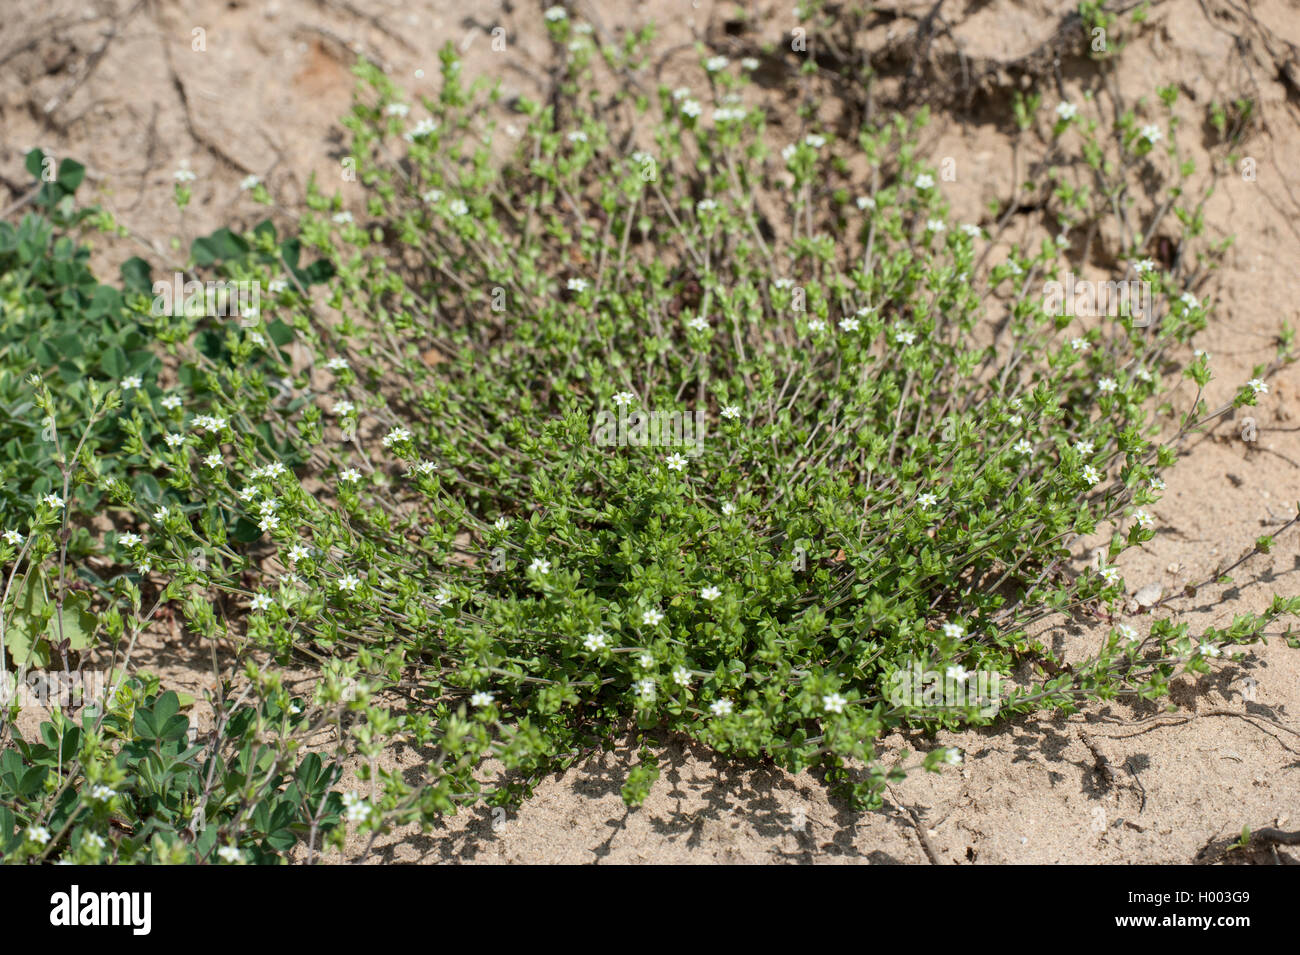 thyme-leaved sandwort, thyme-leaf sandwort (Arenaria serpyllifolia), blooming, Germany Stock Photo